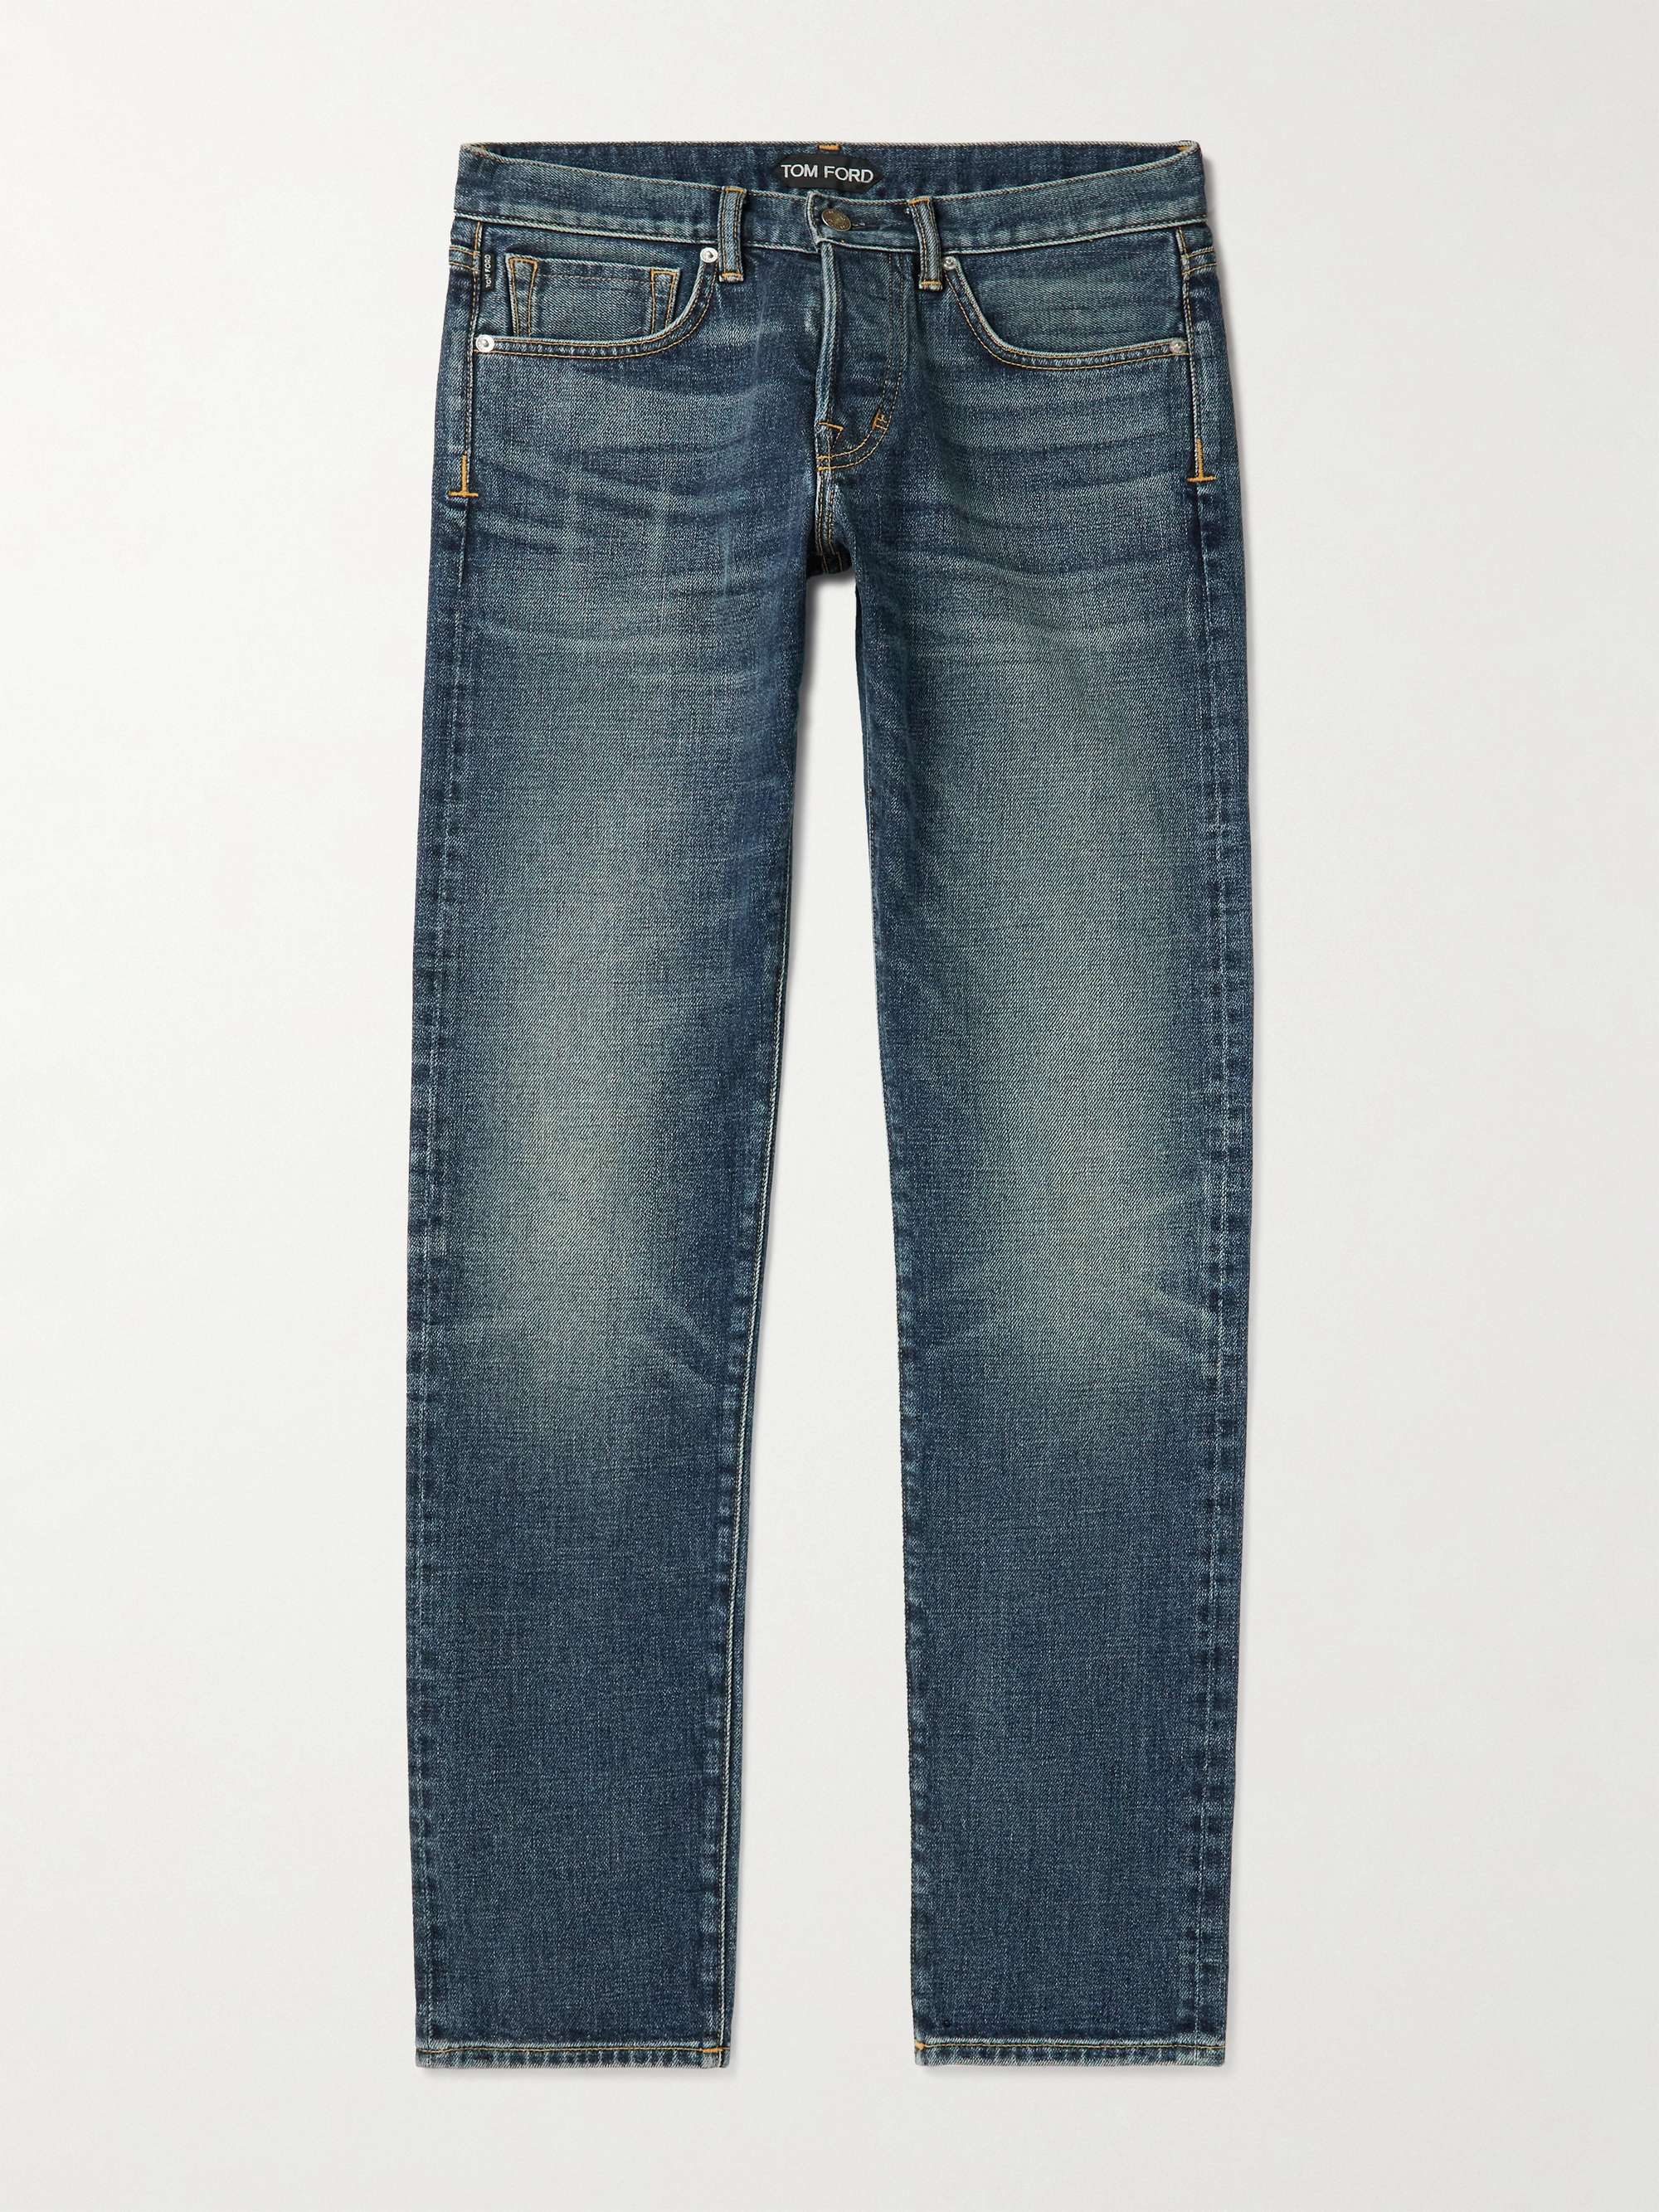 TOM FORD Skinny-Fit Selvedge Jeans for Men | MR PORTER